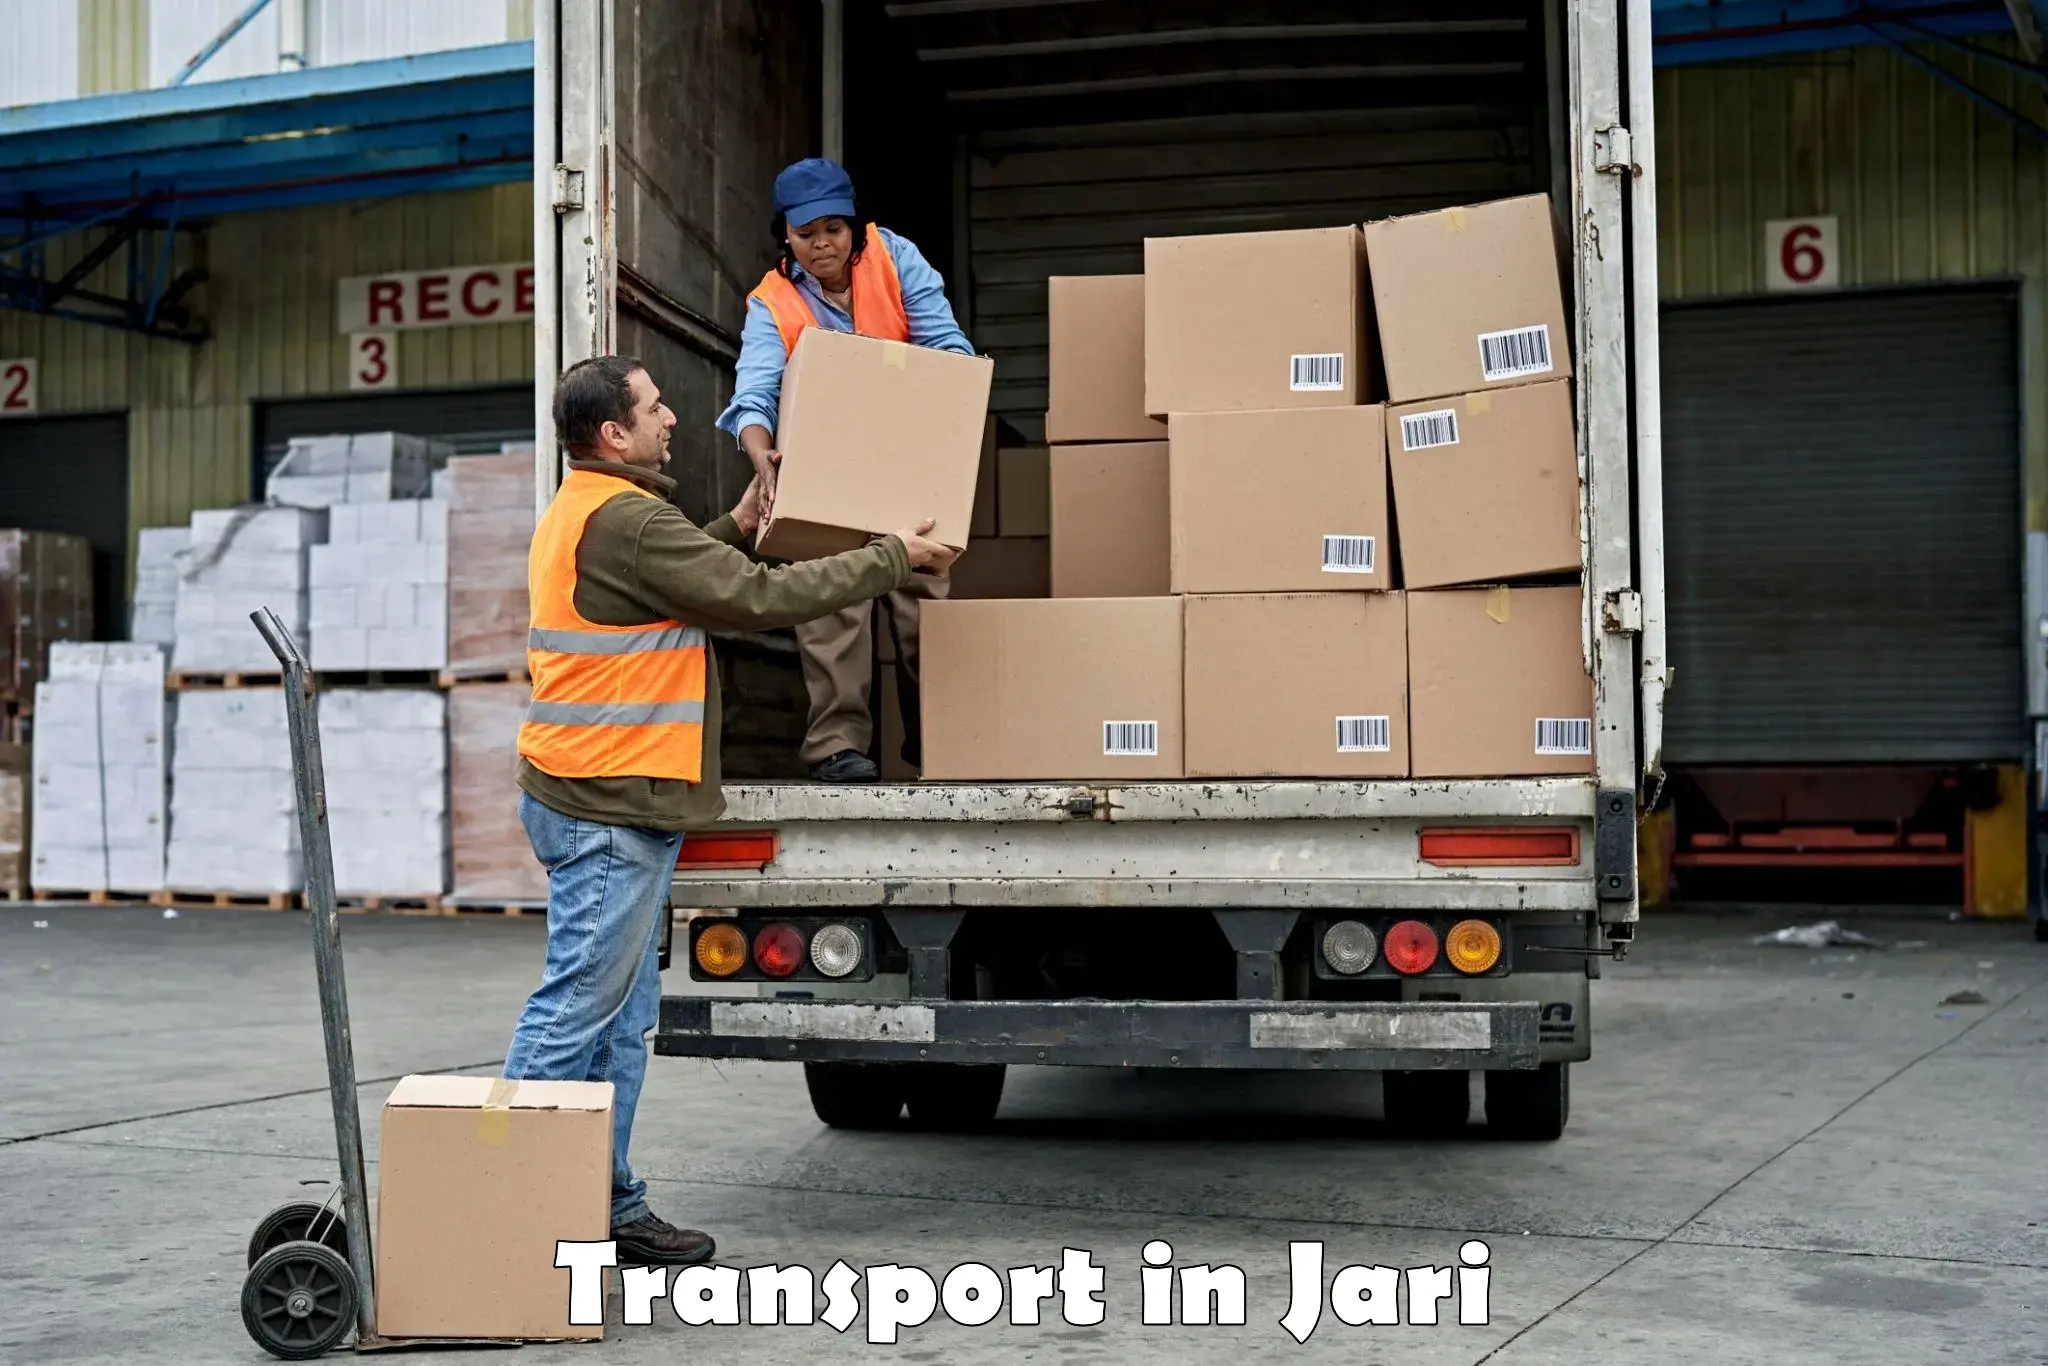 Cargo train transport services in Jari